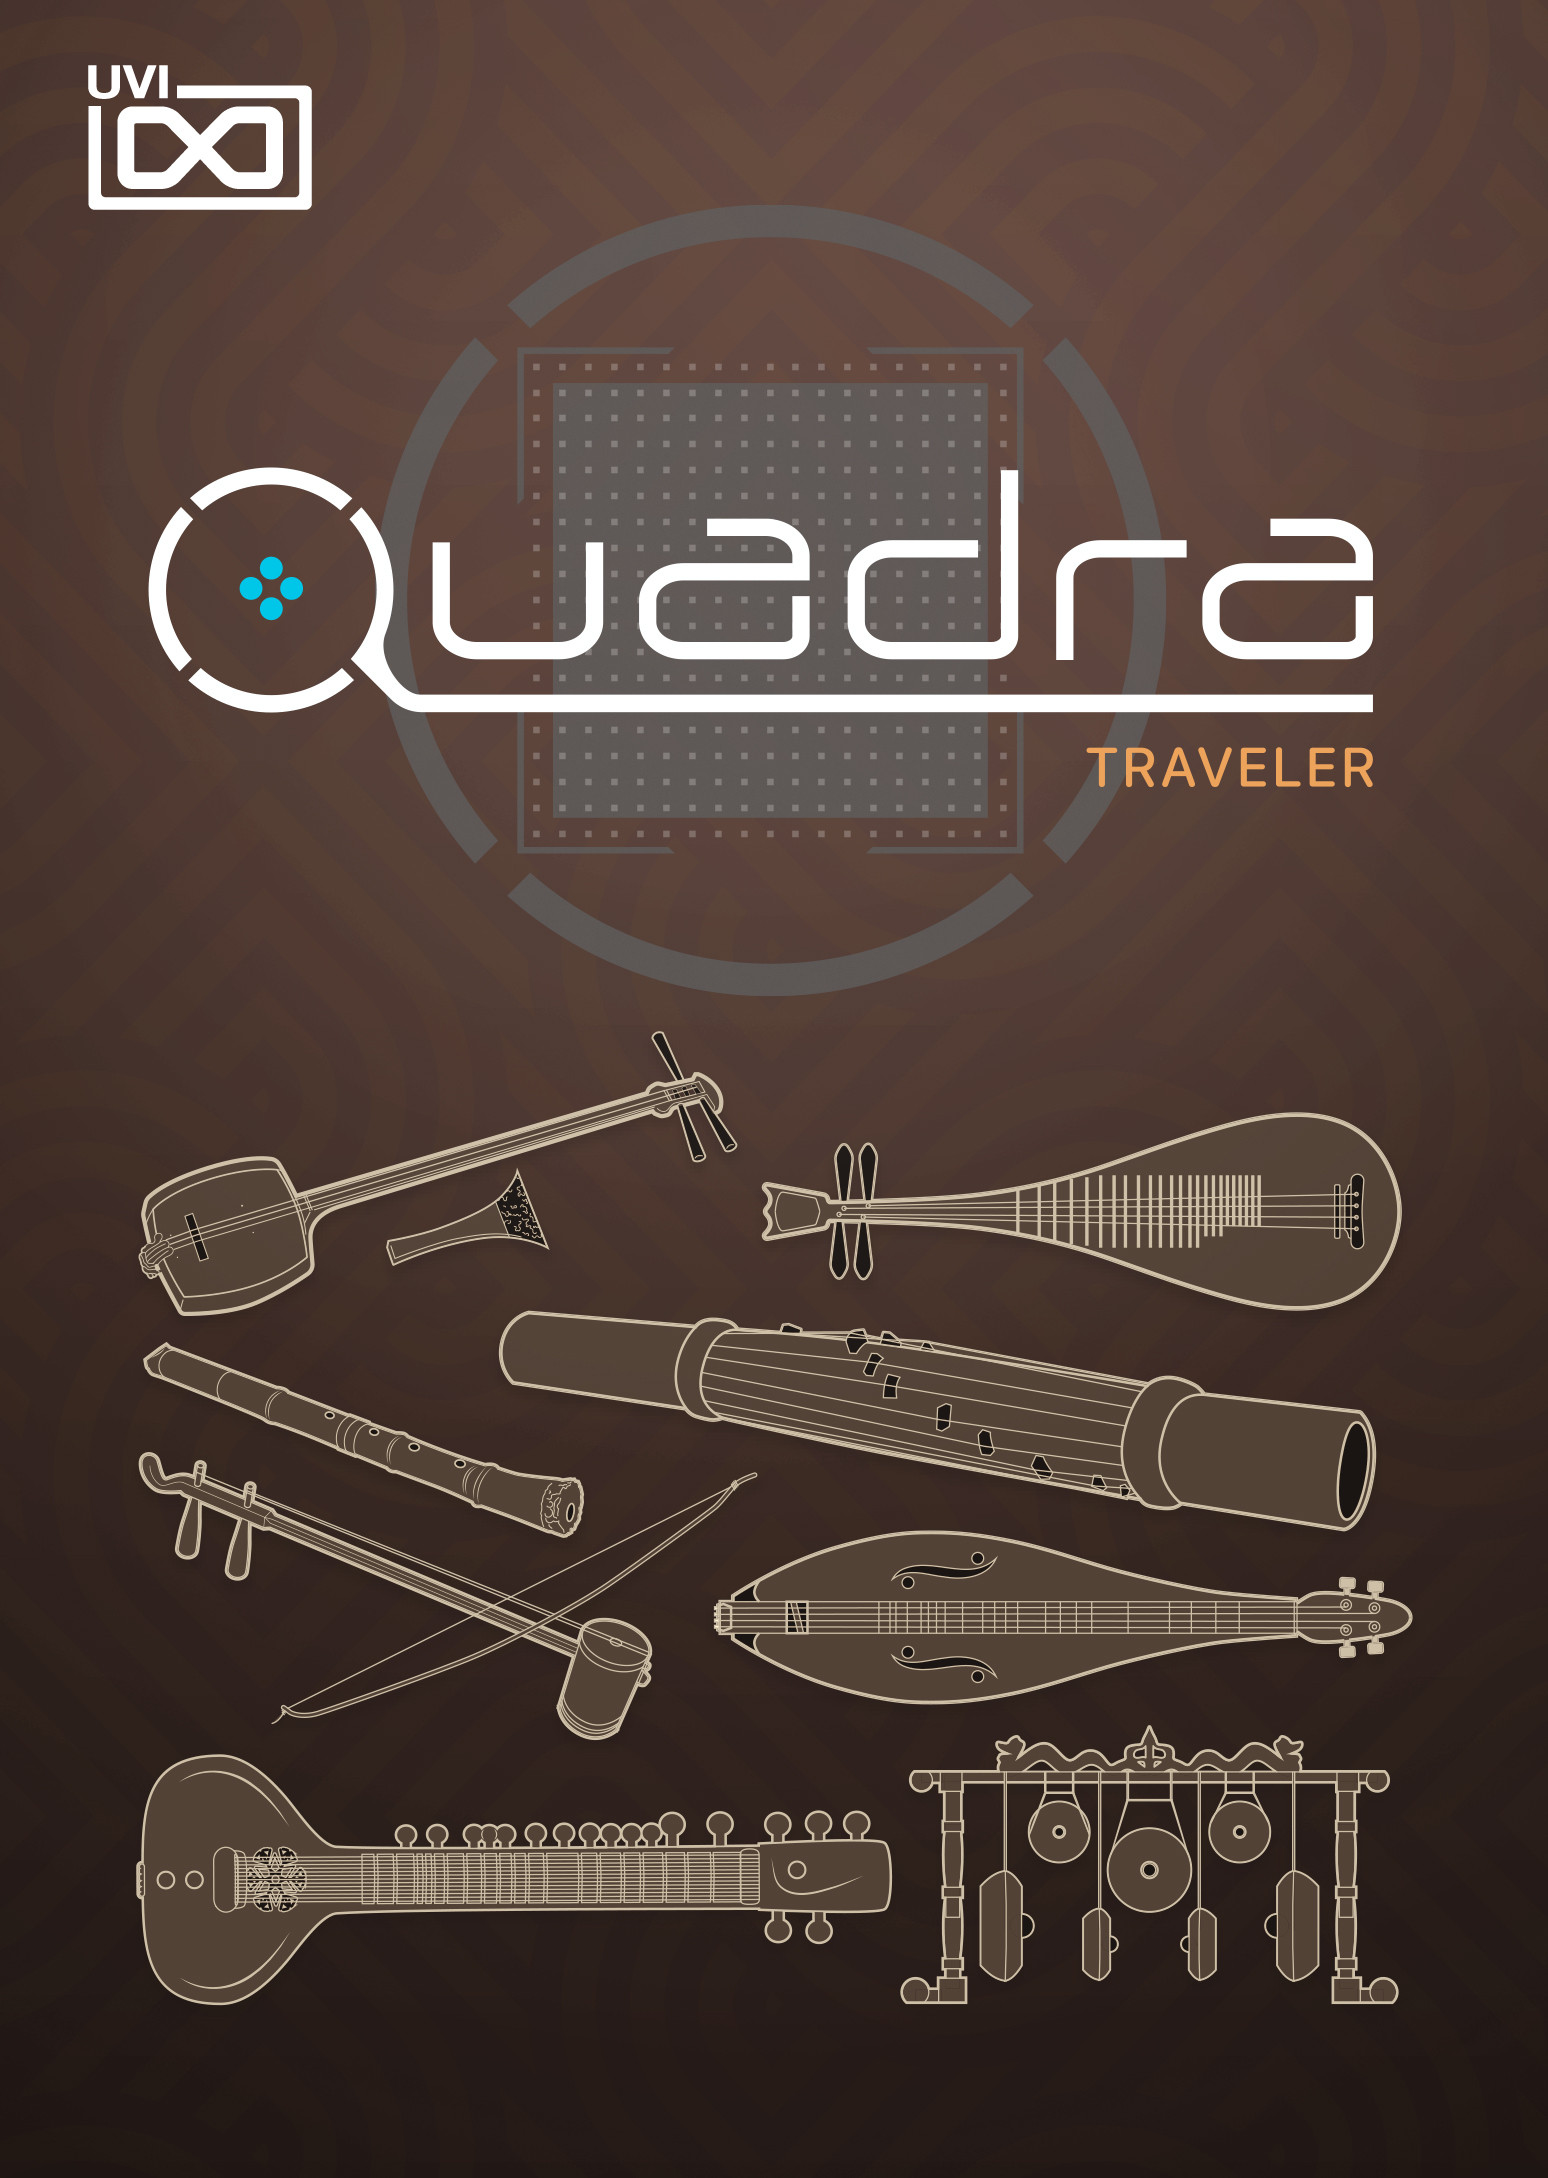 Quadra - Traveler